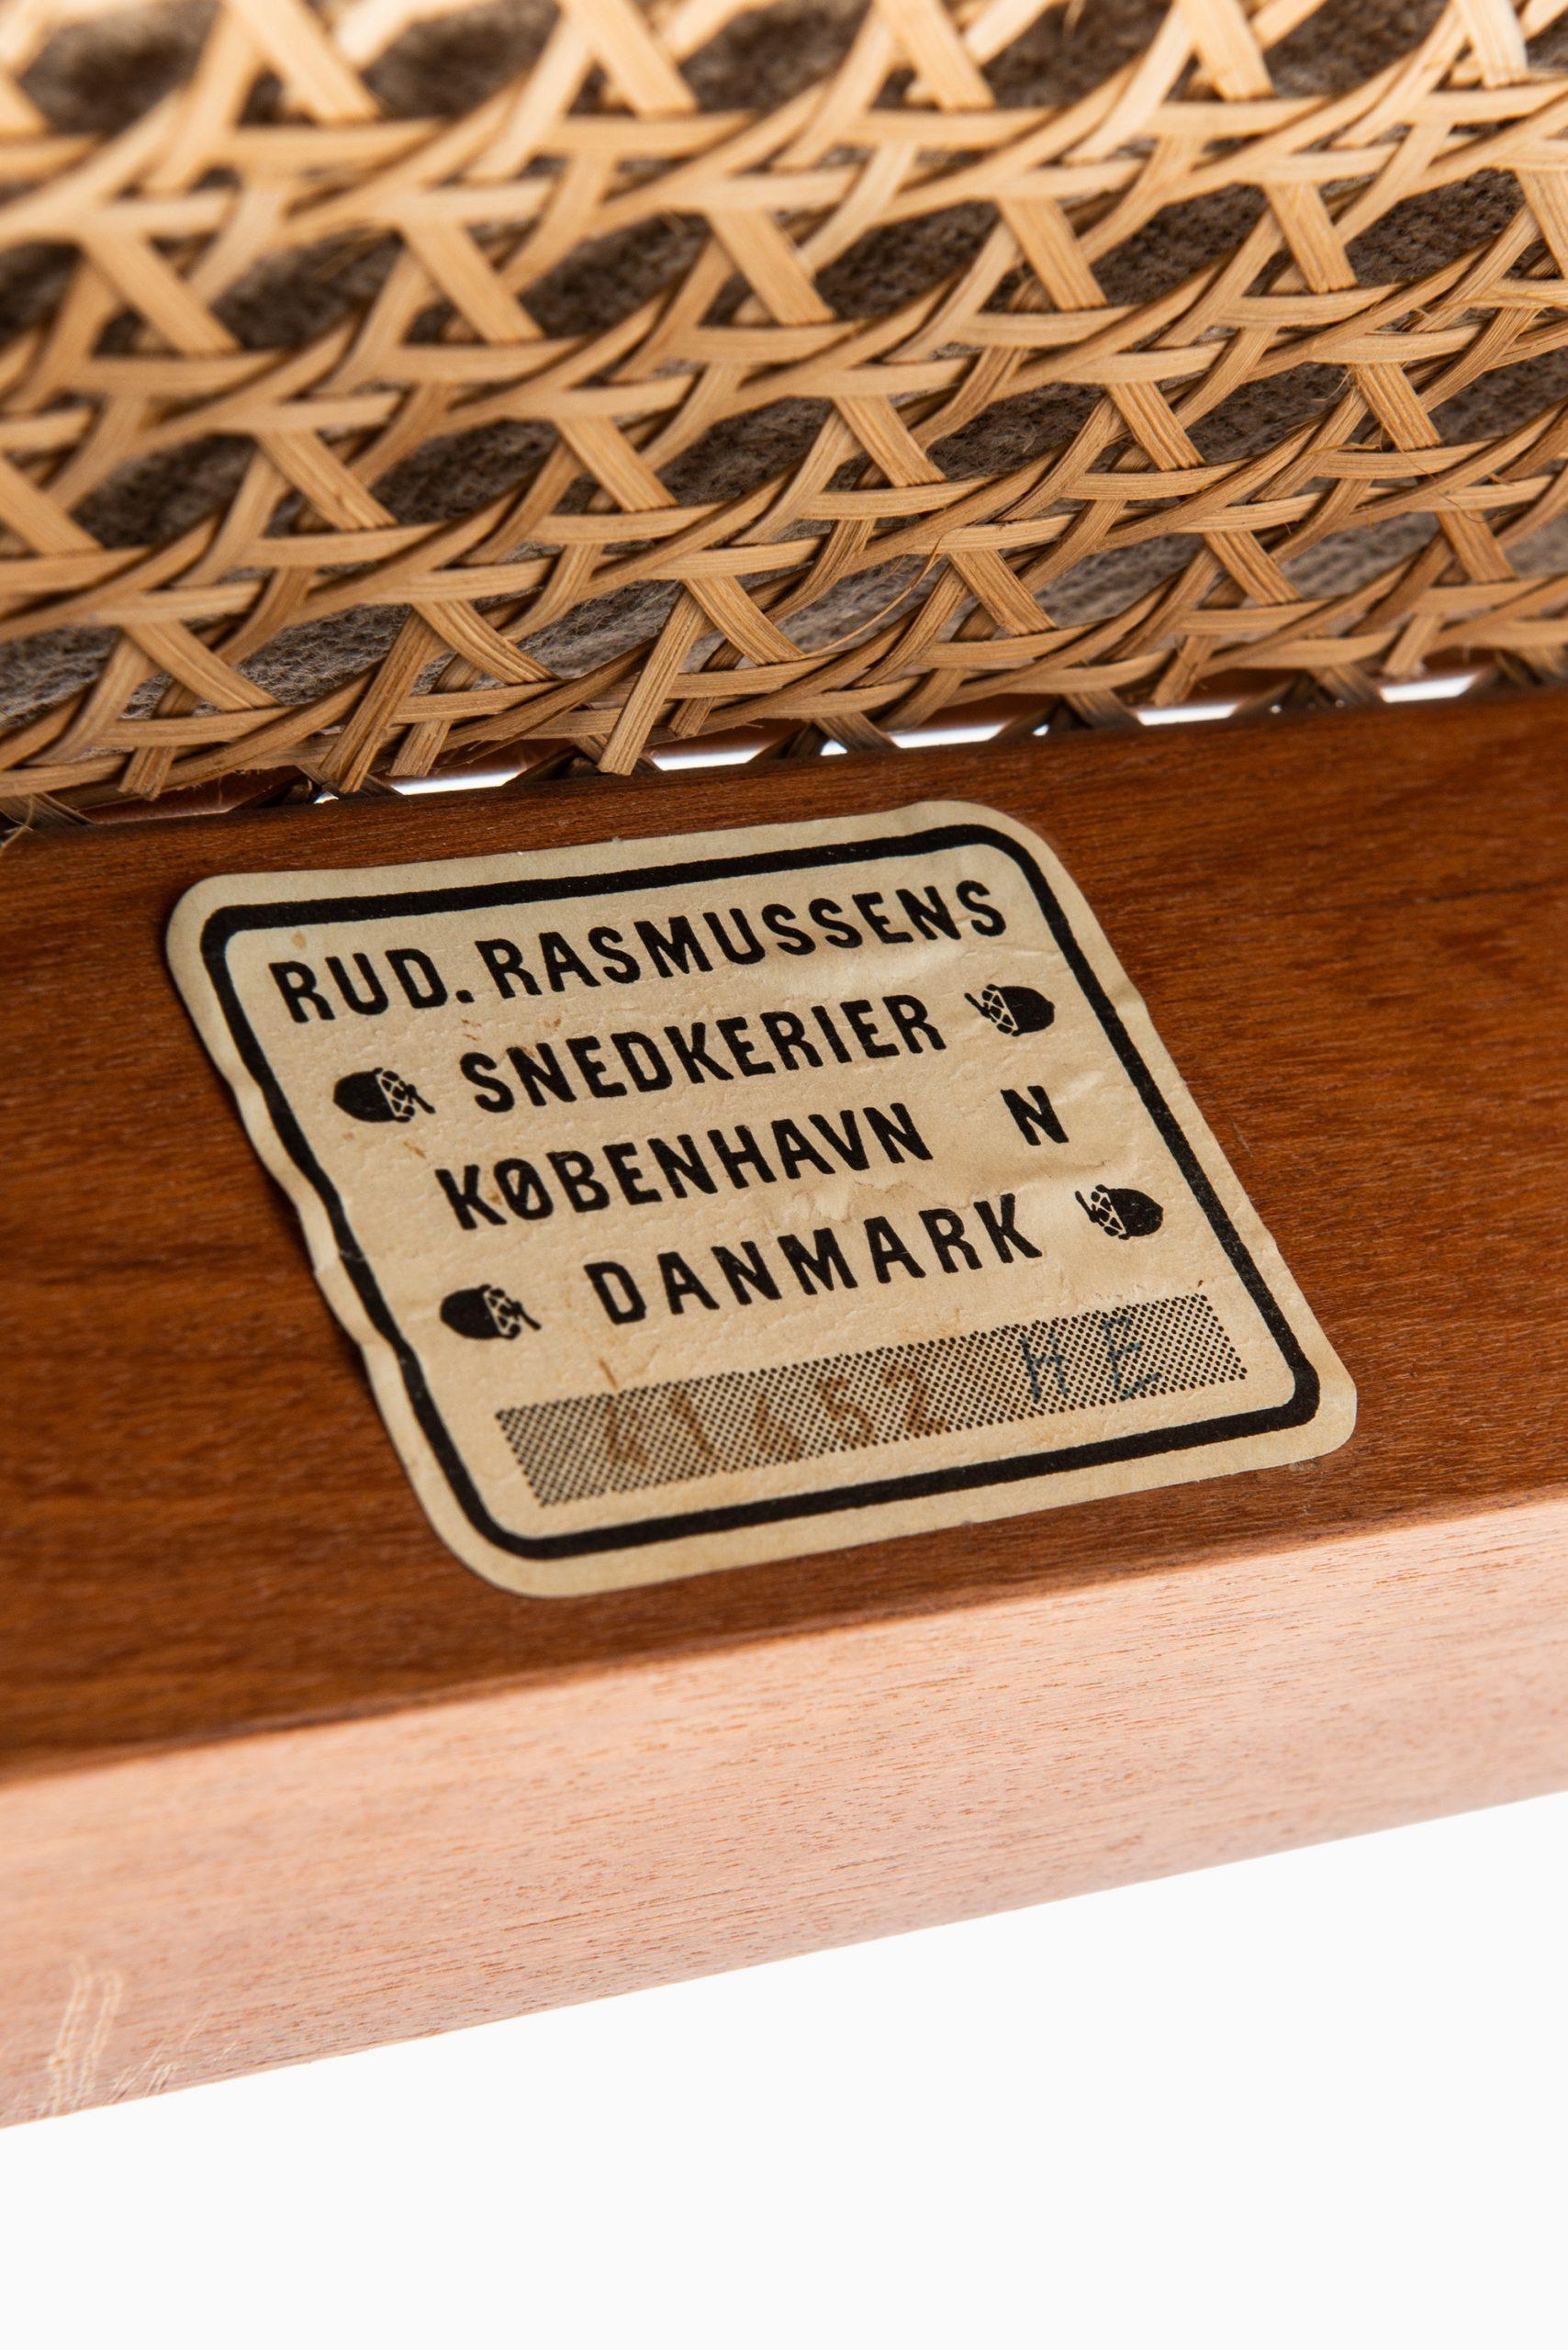 Kaare Klint Bergère / Model 4488 Easy Chairs by Rud. Rasmussen Cabinetmakers 7